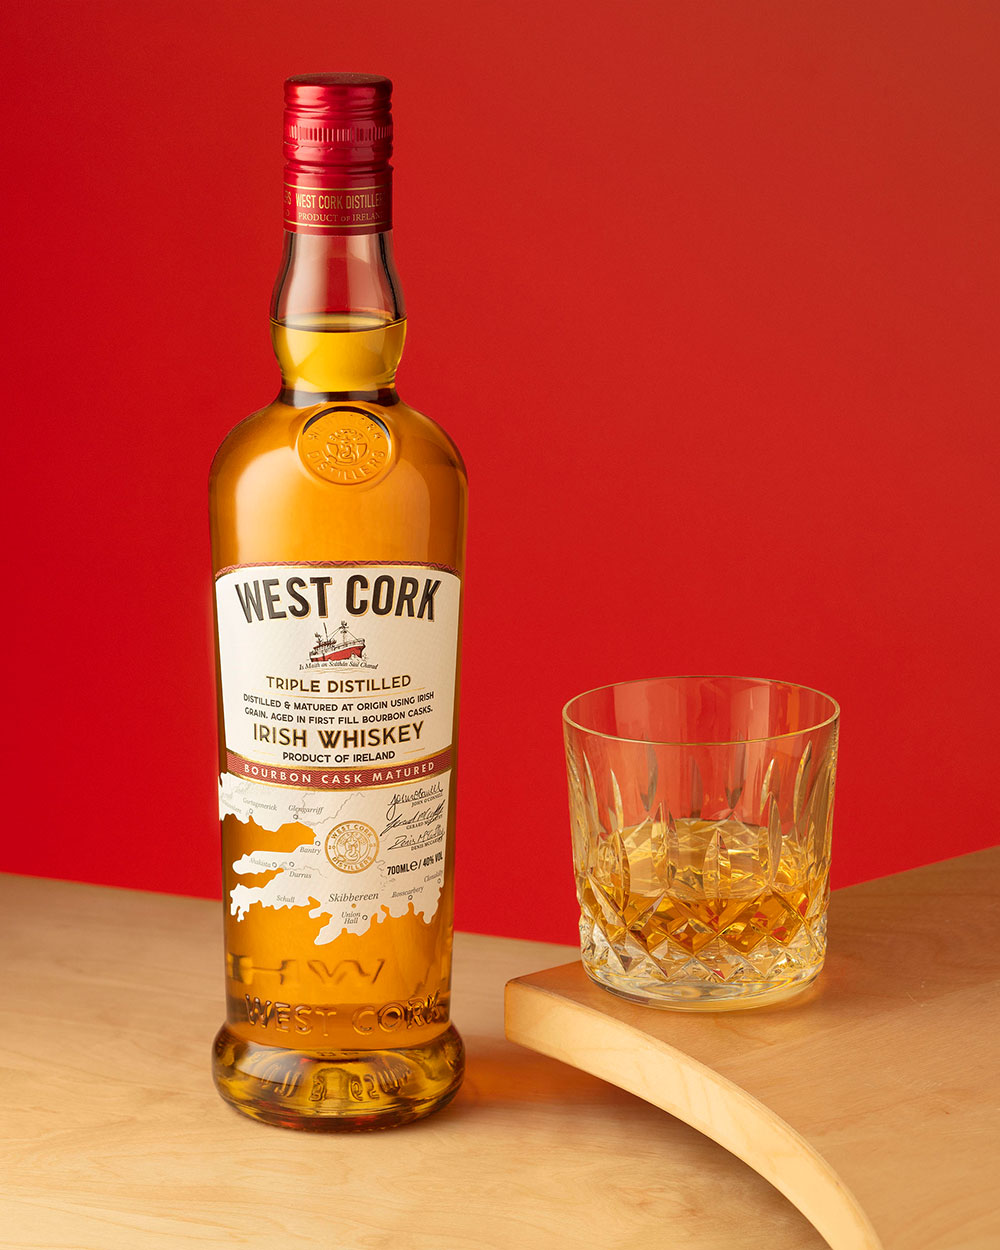 West Cork Blended Irish Whiskey